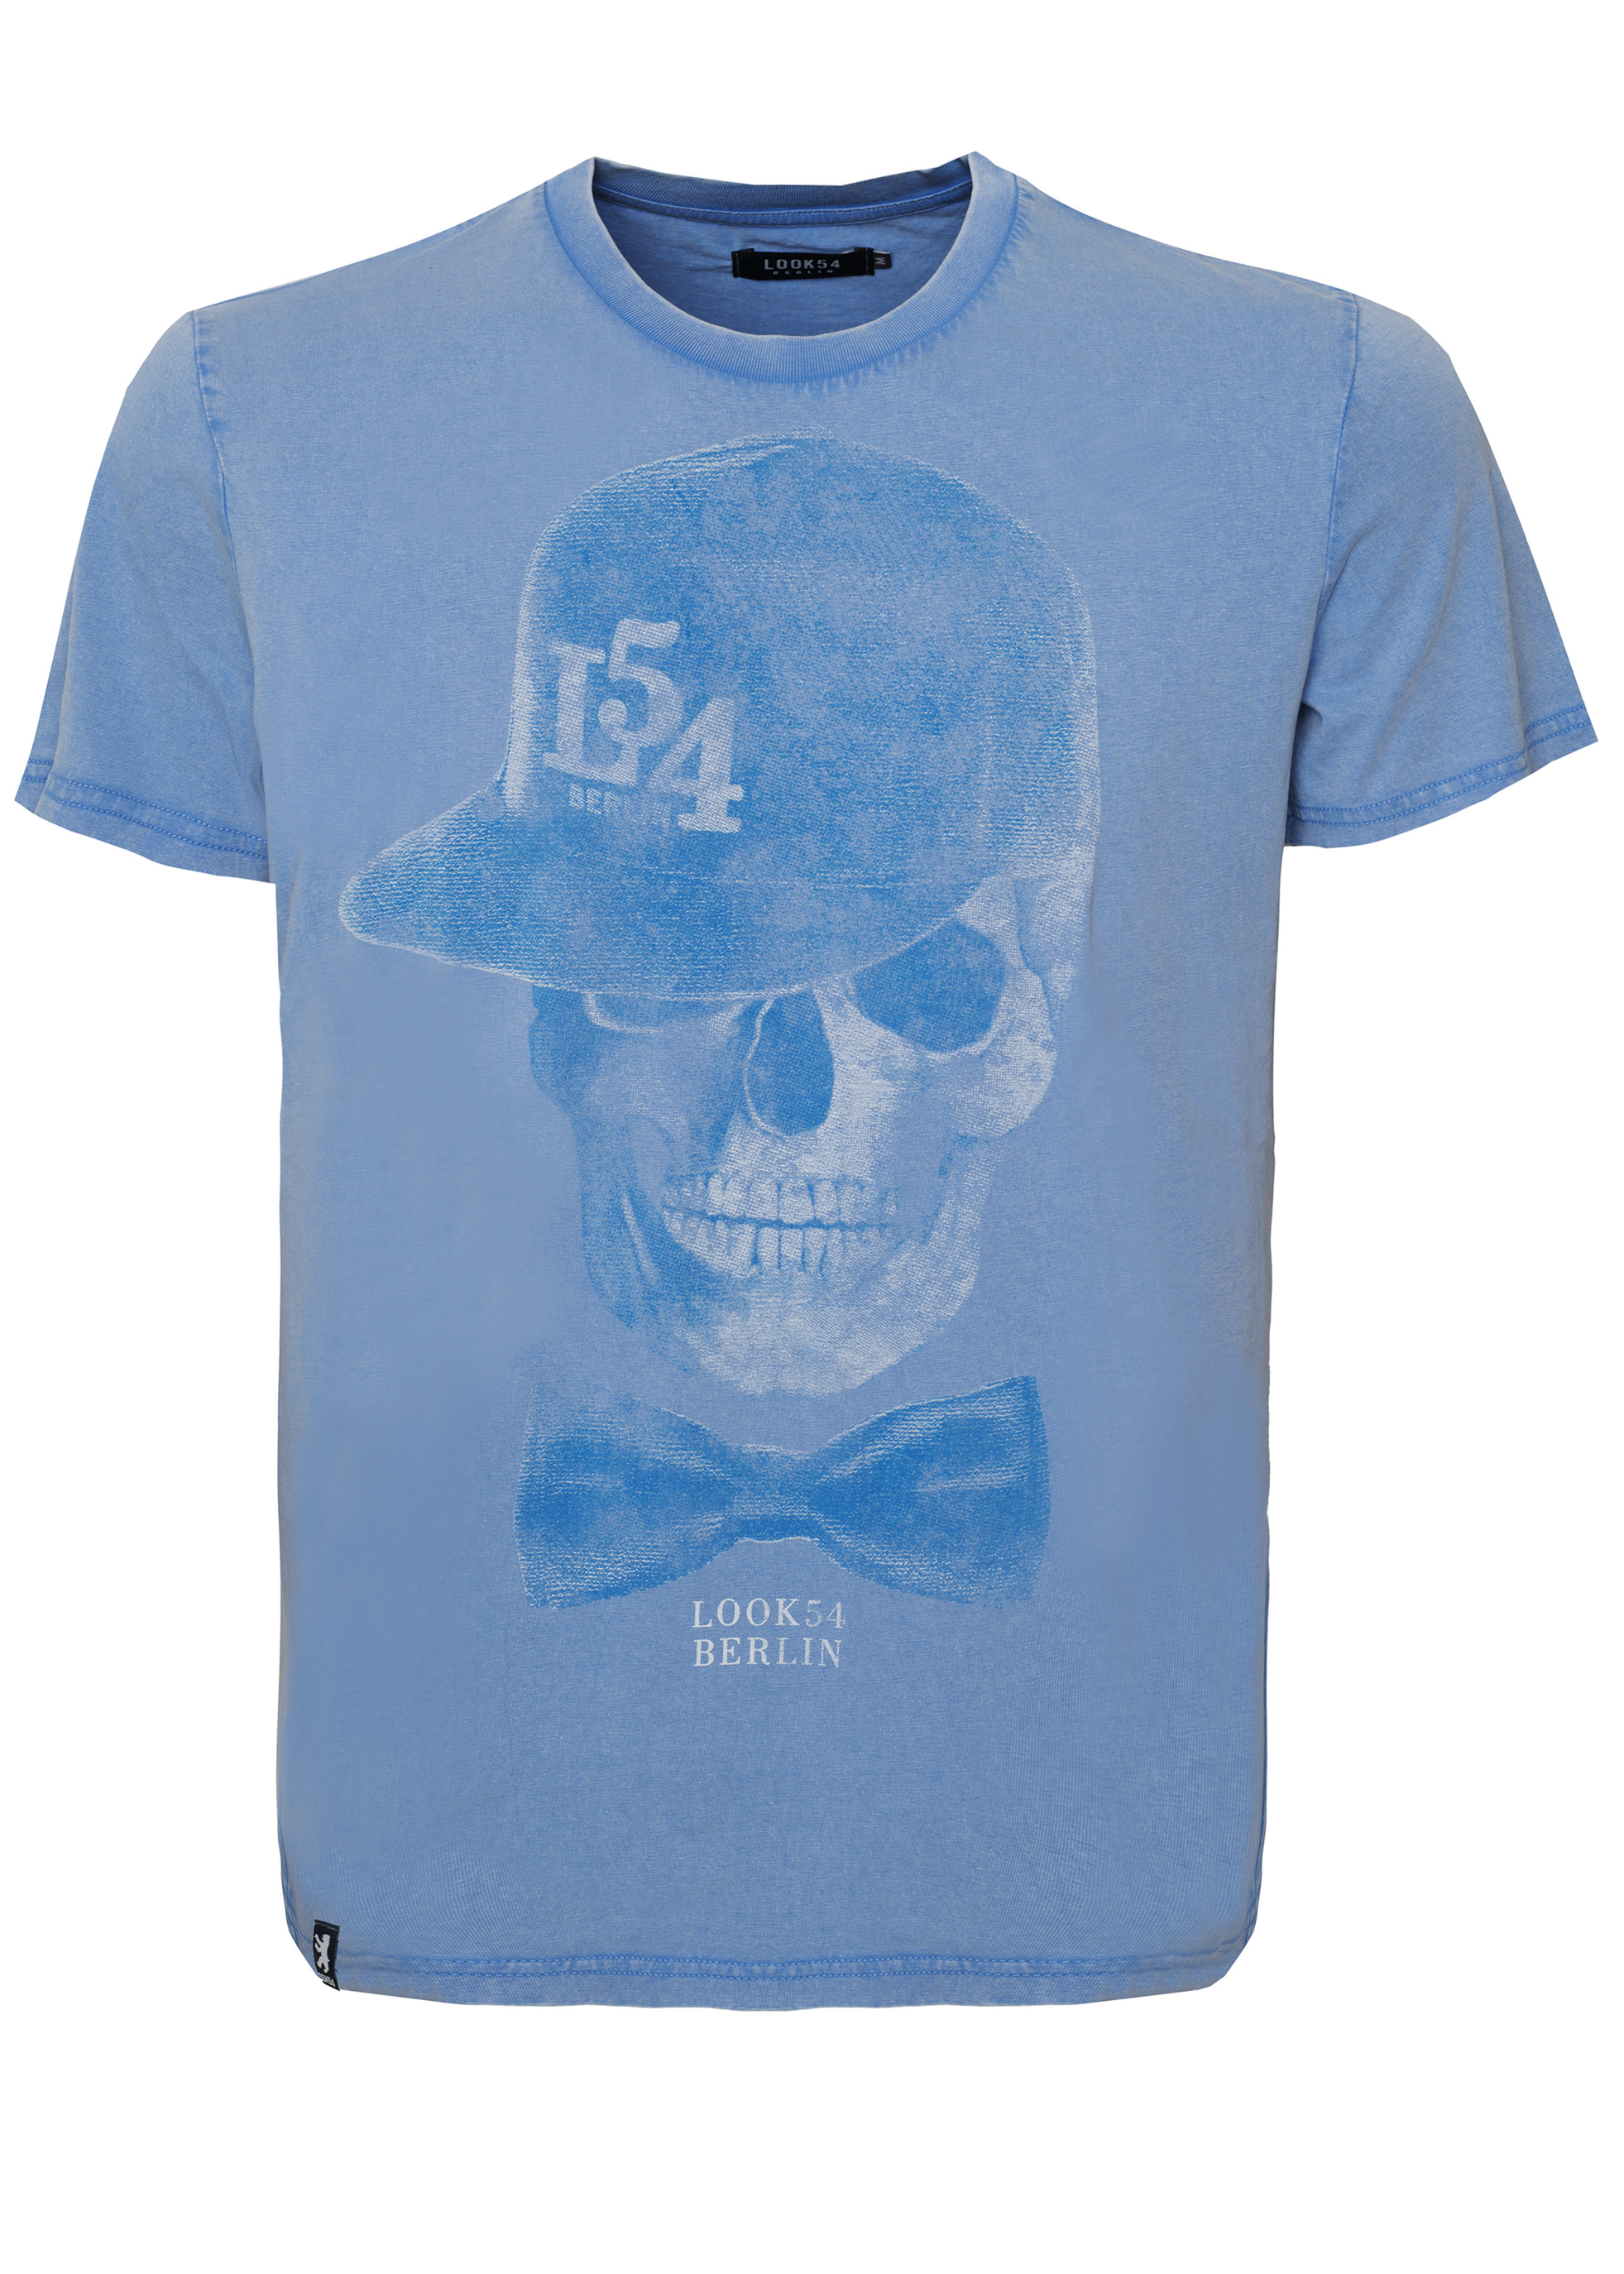 Cap Skull Vintage T-Shirt